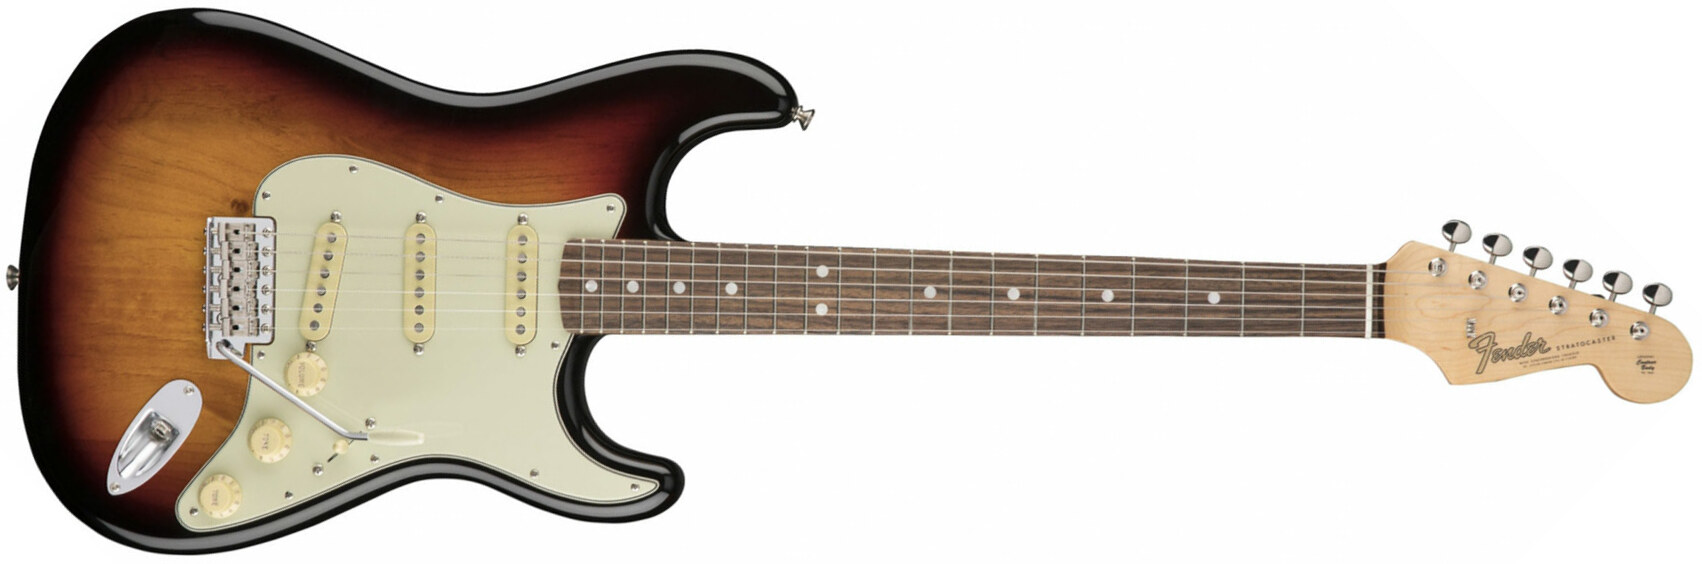 Fender Strat '60s American Original Usa Sss Rw - 3-color Sunburst - Guitare Électrique Forme Str - Main picture